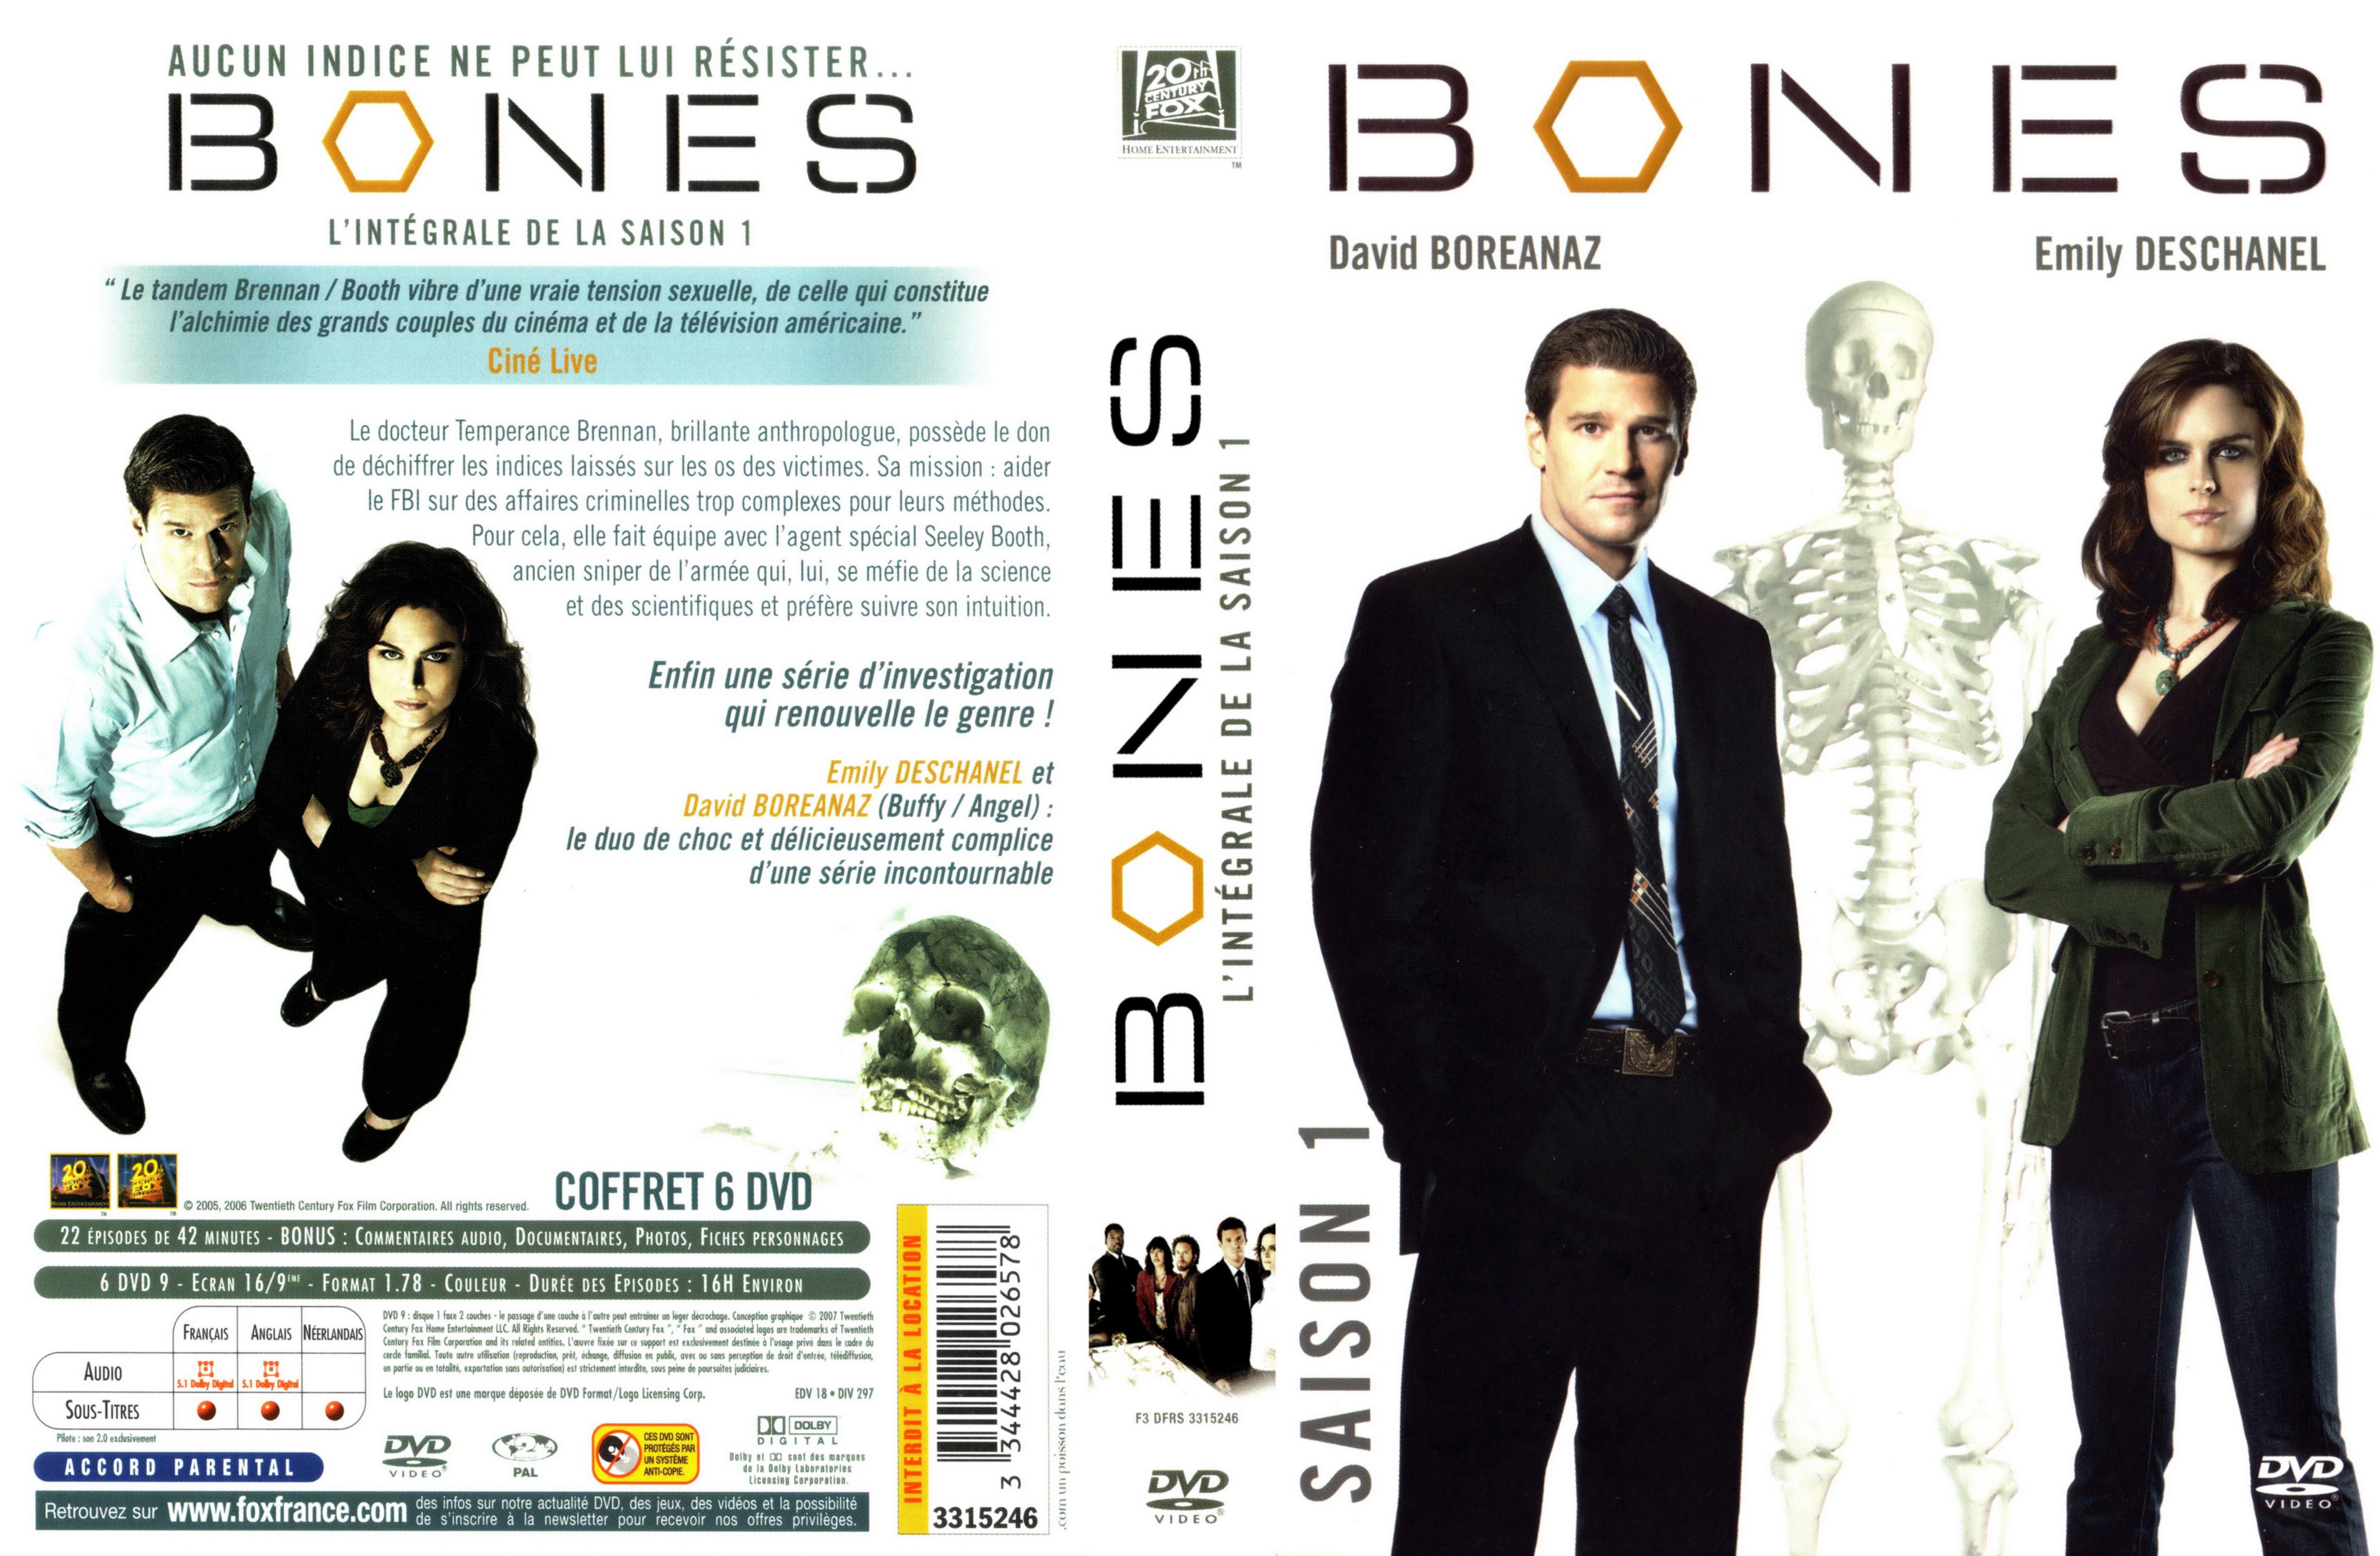 Jaquette DVD Bones Saison 1 COFFRET